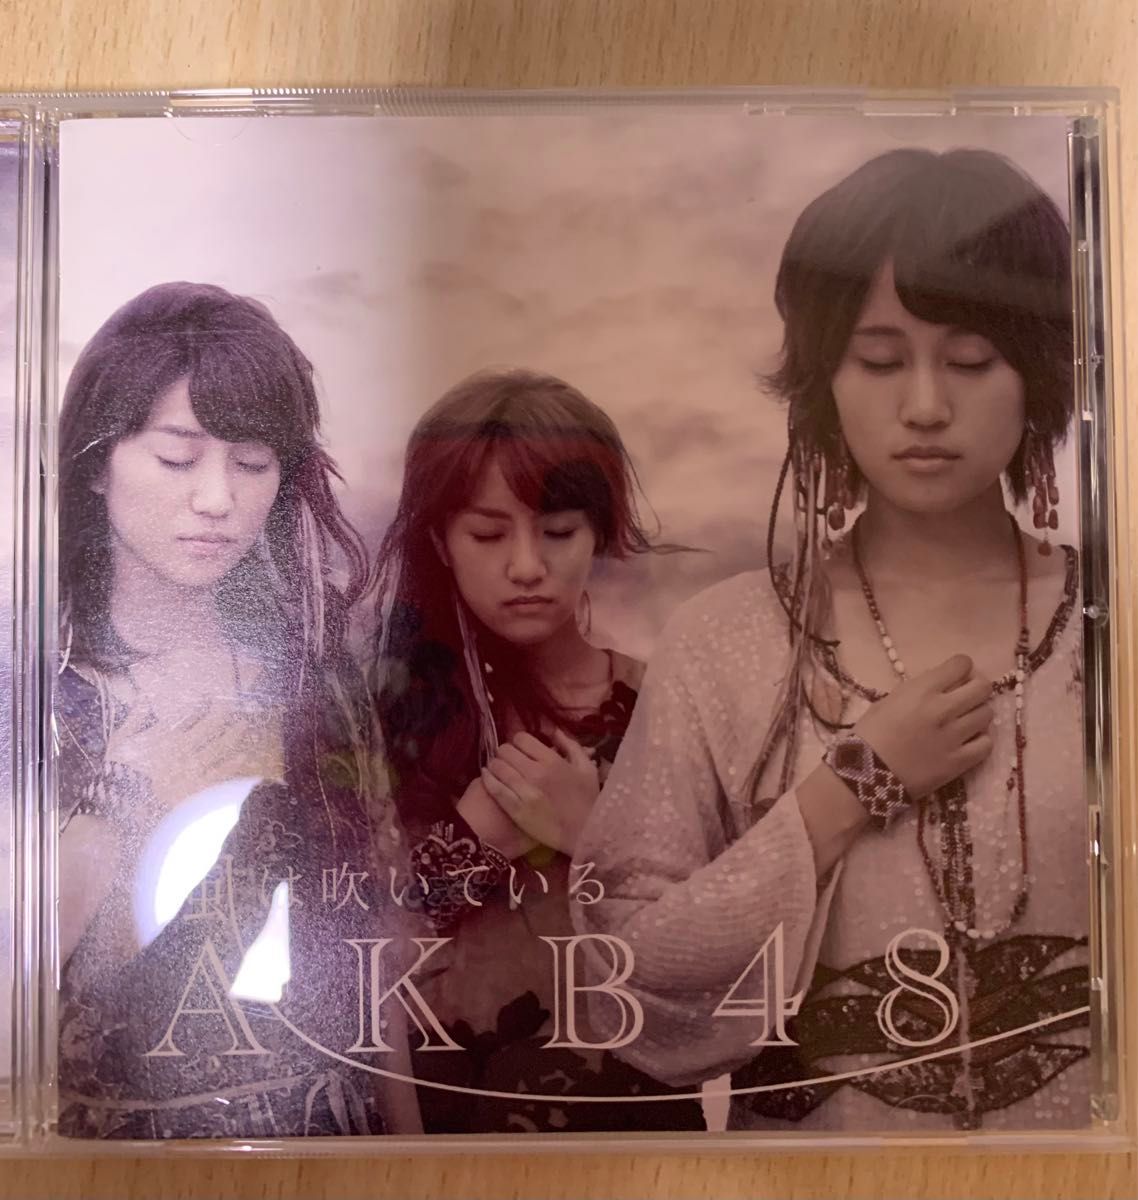 AKB48 CD DVD 5枚組セット